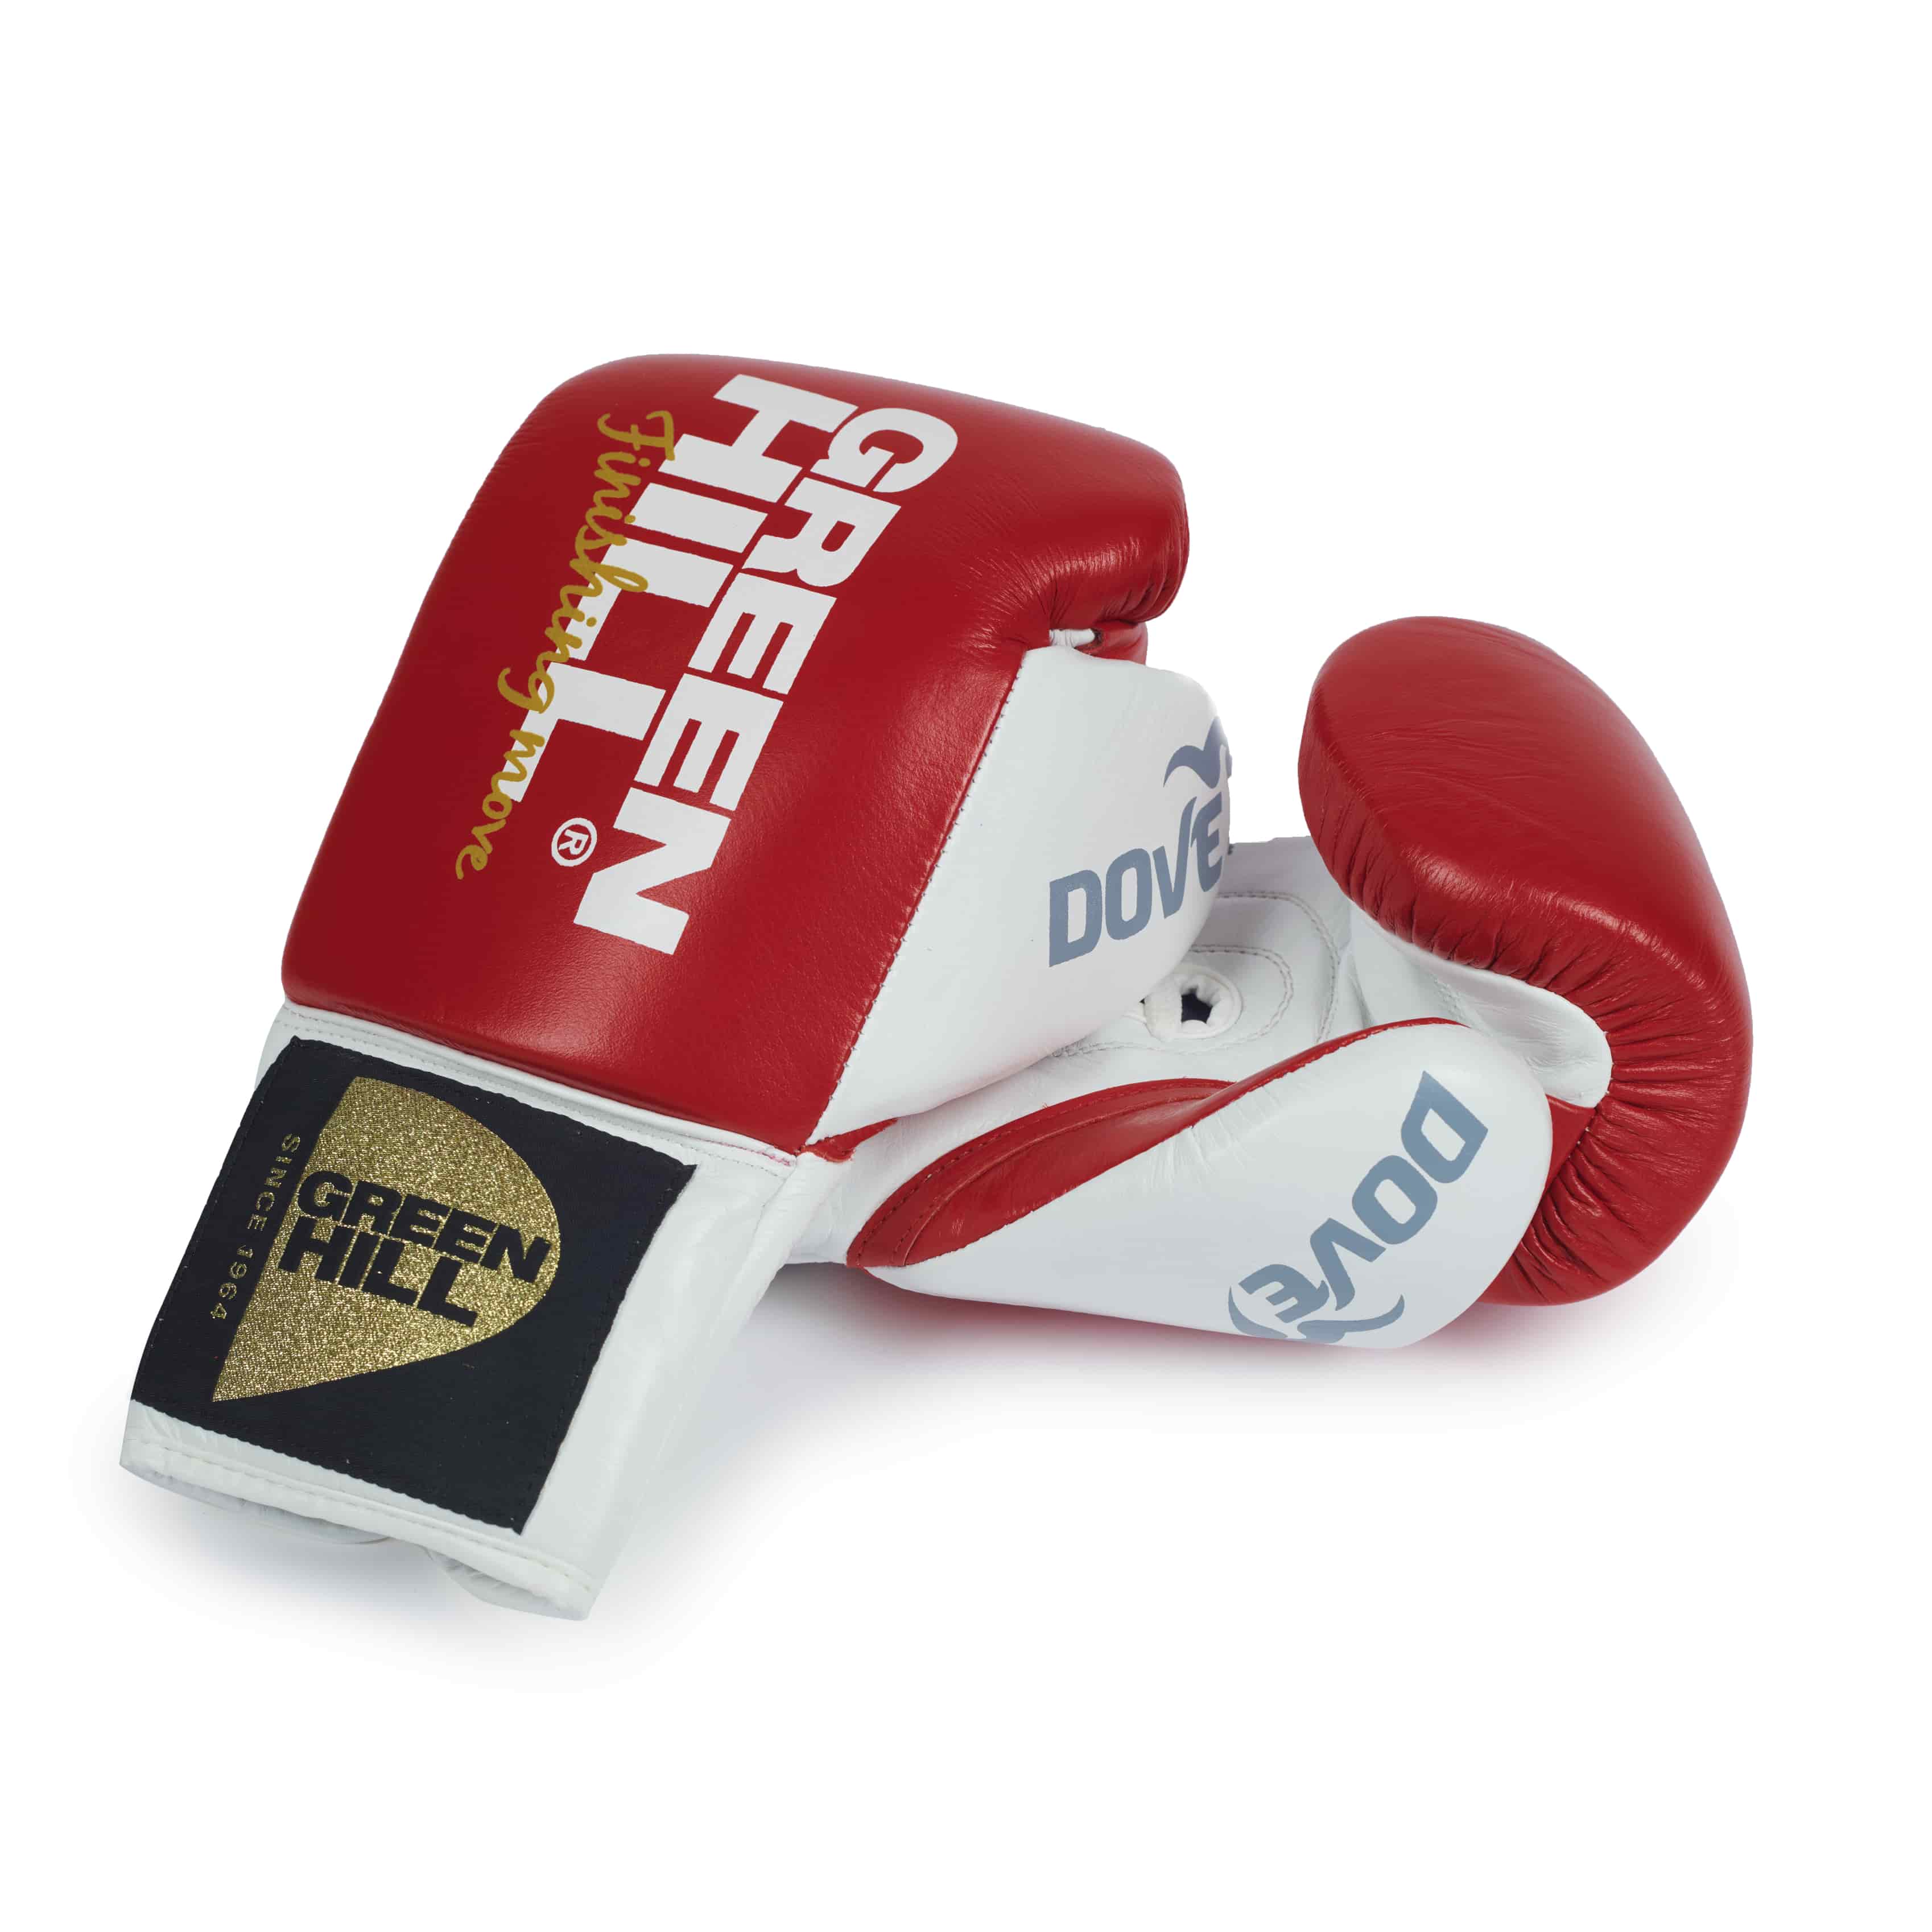 Boxing Gloves “Dove”